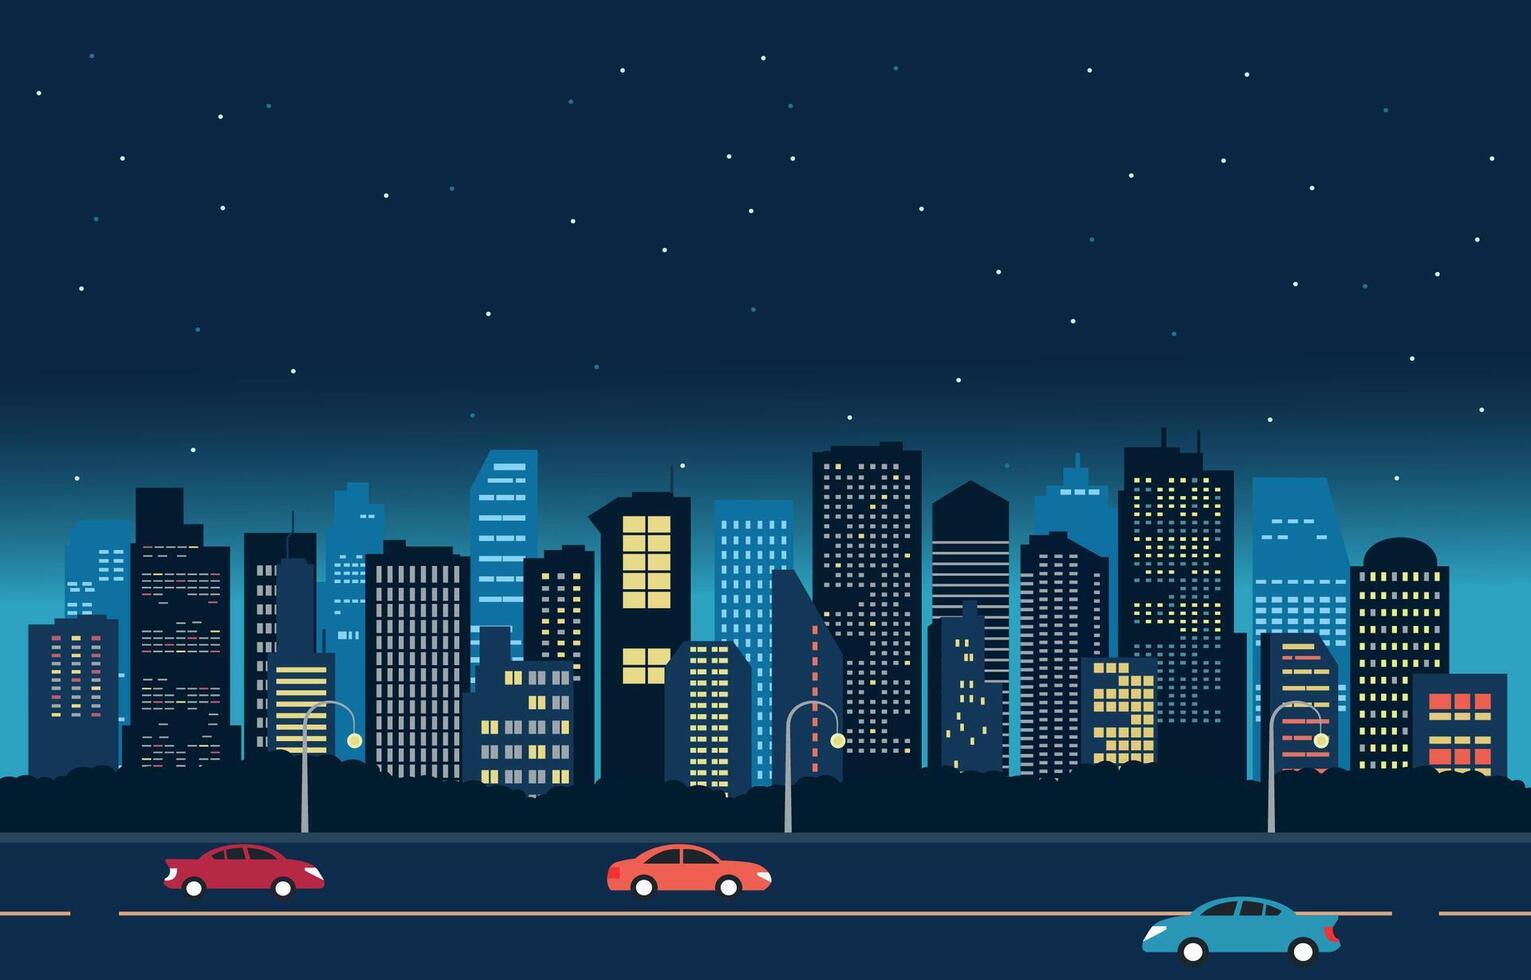 Autoroute rue dans ville à nuit avec grattes ciels bâtiment plat conception illustration.eps vecteur